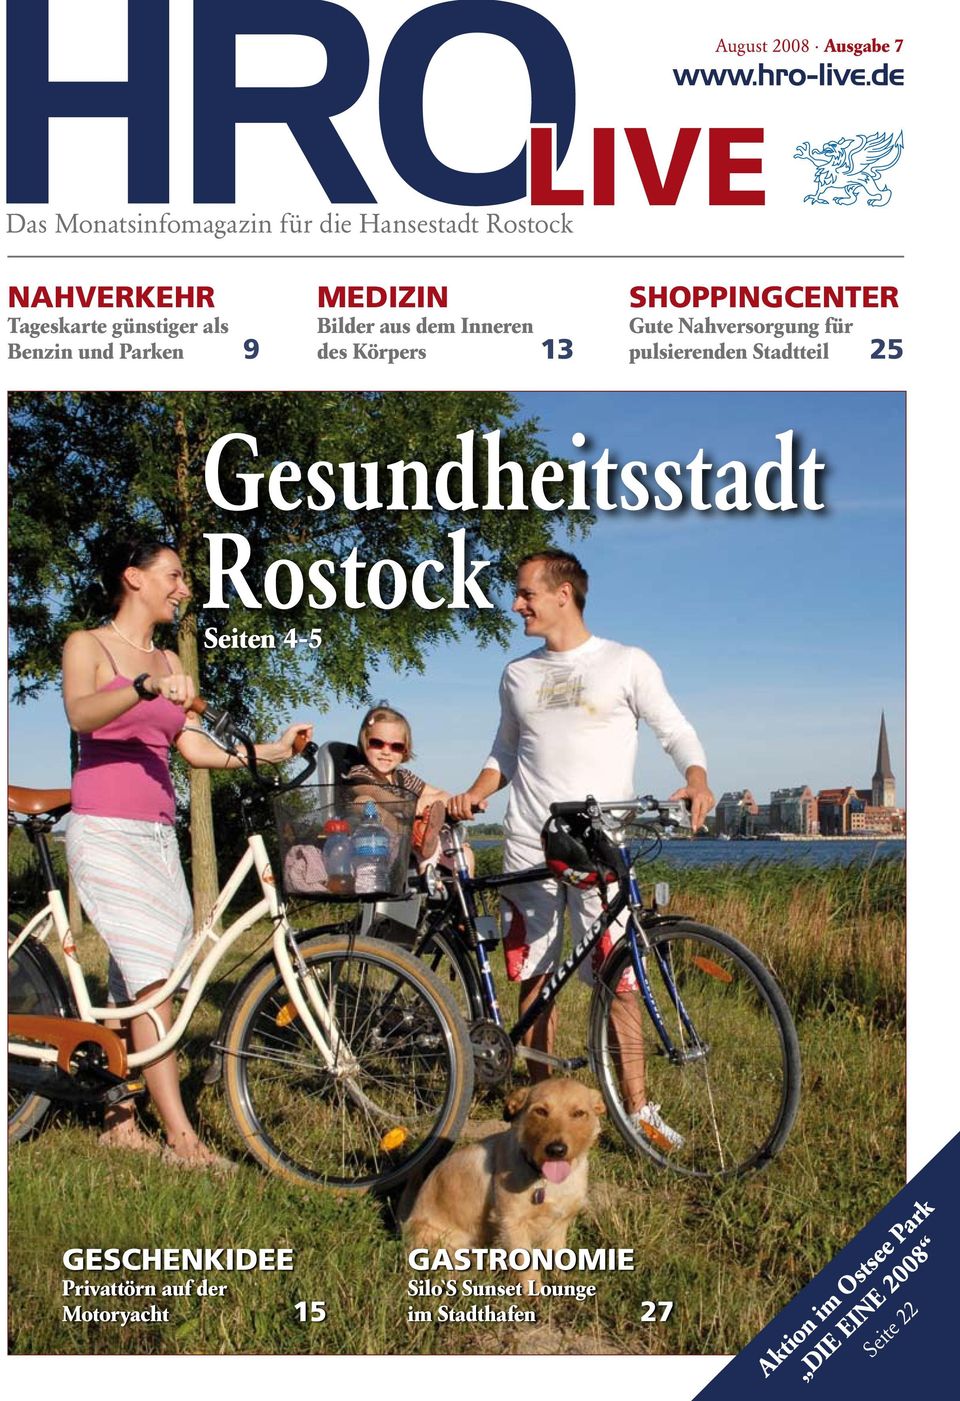 shoppingcenter Gute Nahversorgung für pulsierenden Stadtteil 25 Gesundheitsstadt Rostock Seiten 4-5